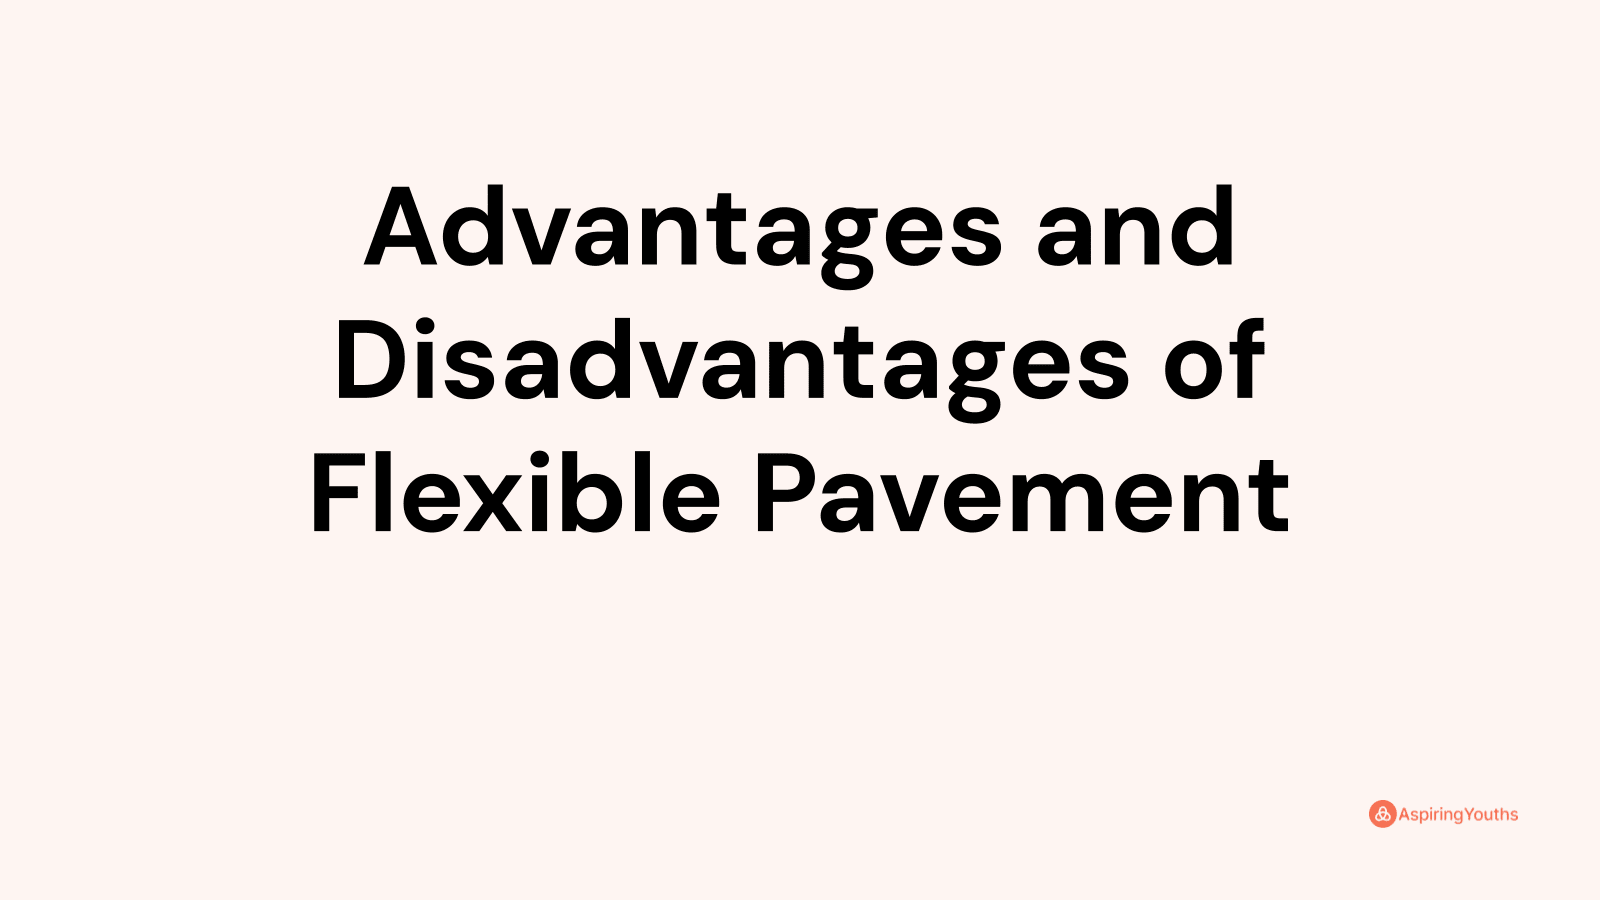 Advantages and disadvantages of Flexible Pavement